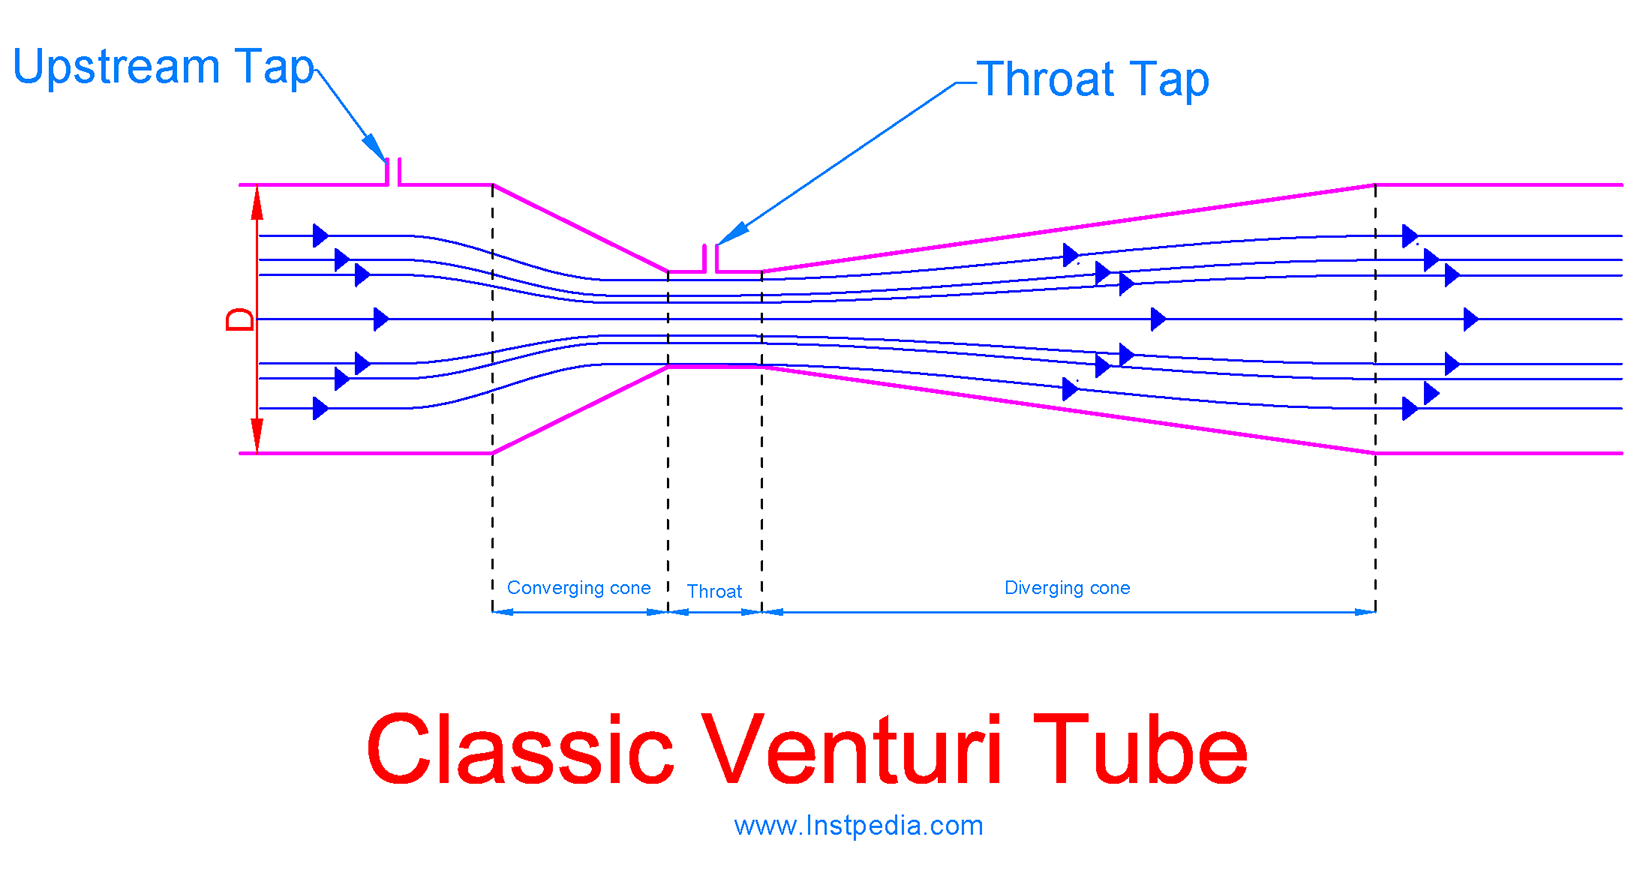 Classic Venturi Tube